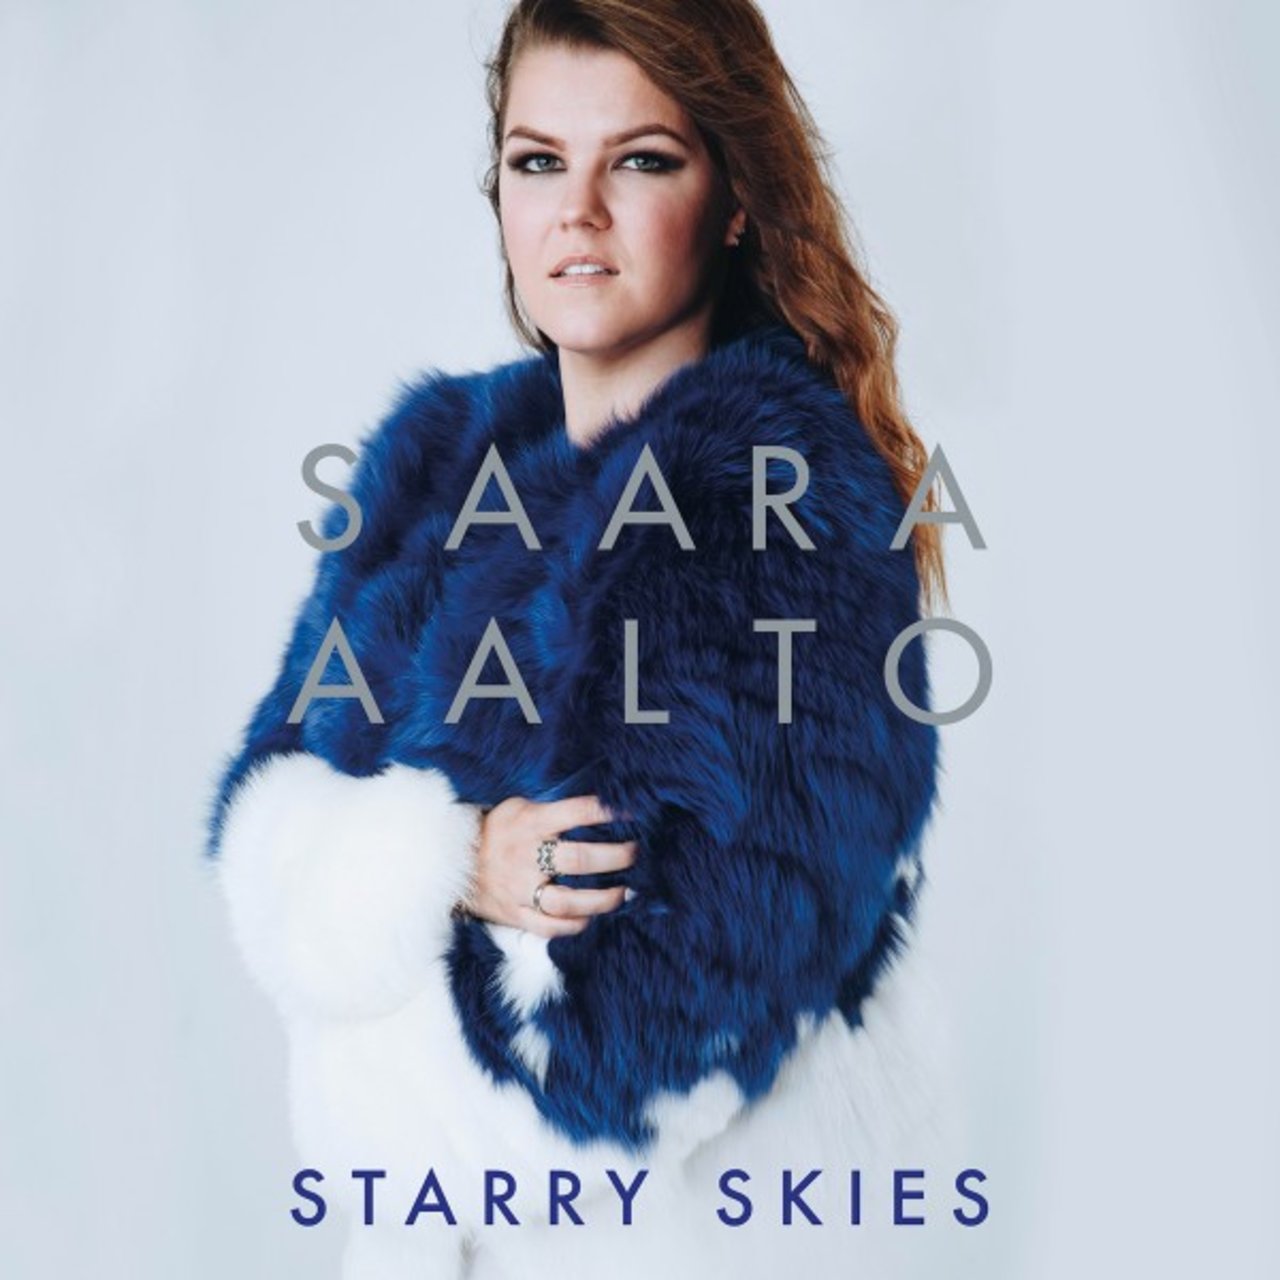 Saara Aalto Starry Skies cover artwork